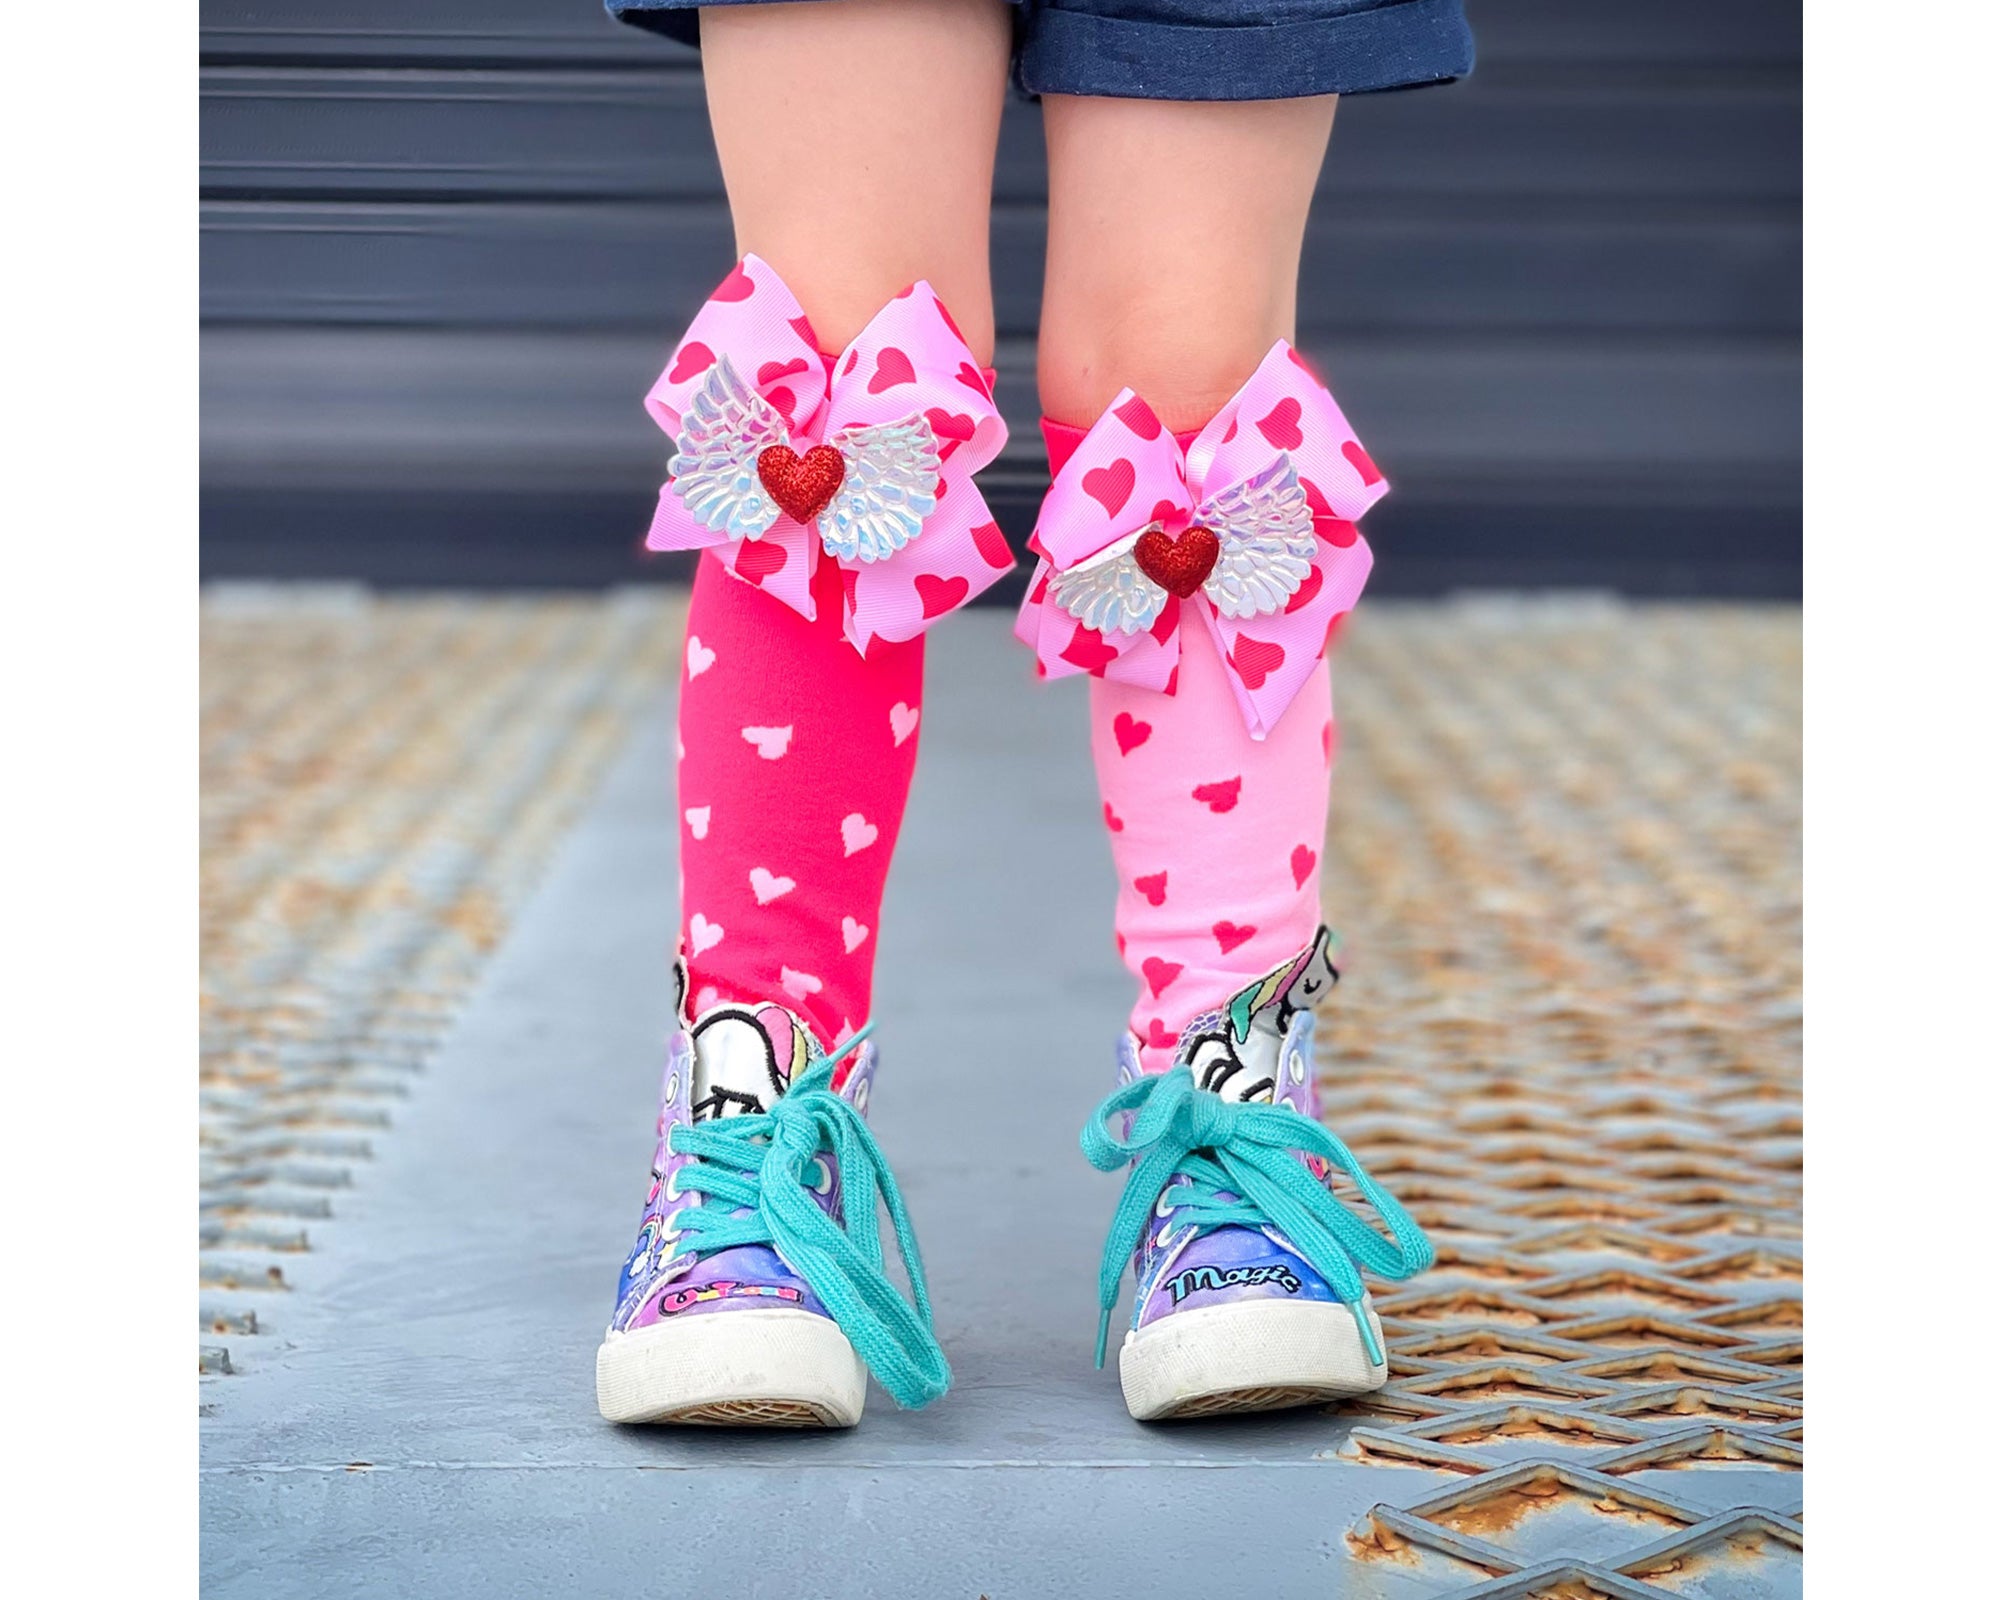 Si vous cherchez une façon amusante et ludique d'ajouter un peu d'amour et d'éclat à votre tenue, les chaussettes Love Hearts Fun sont le choix parfait.